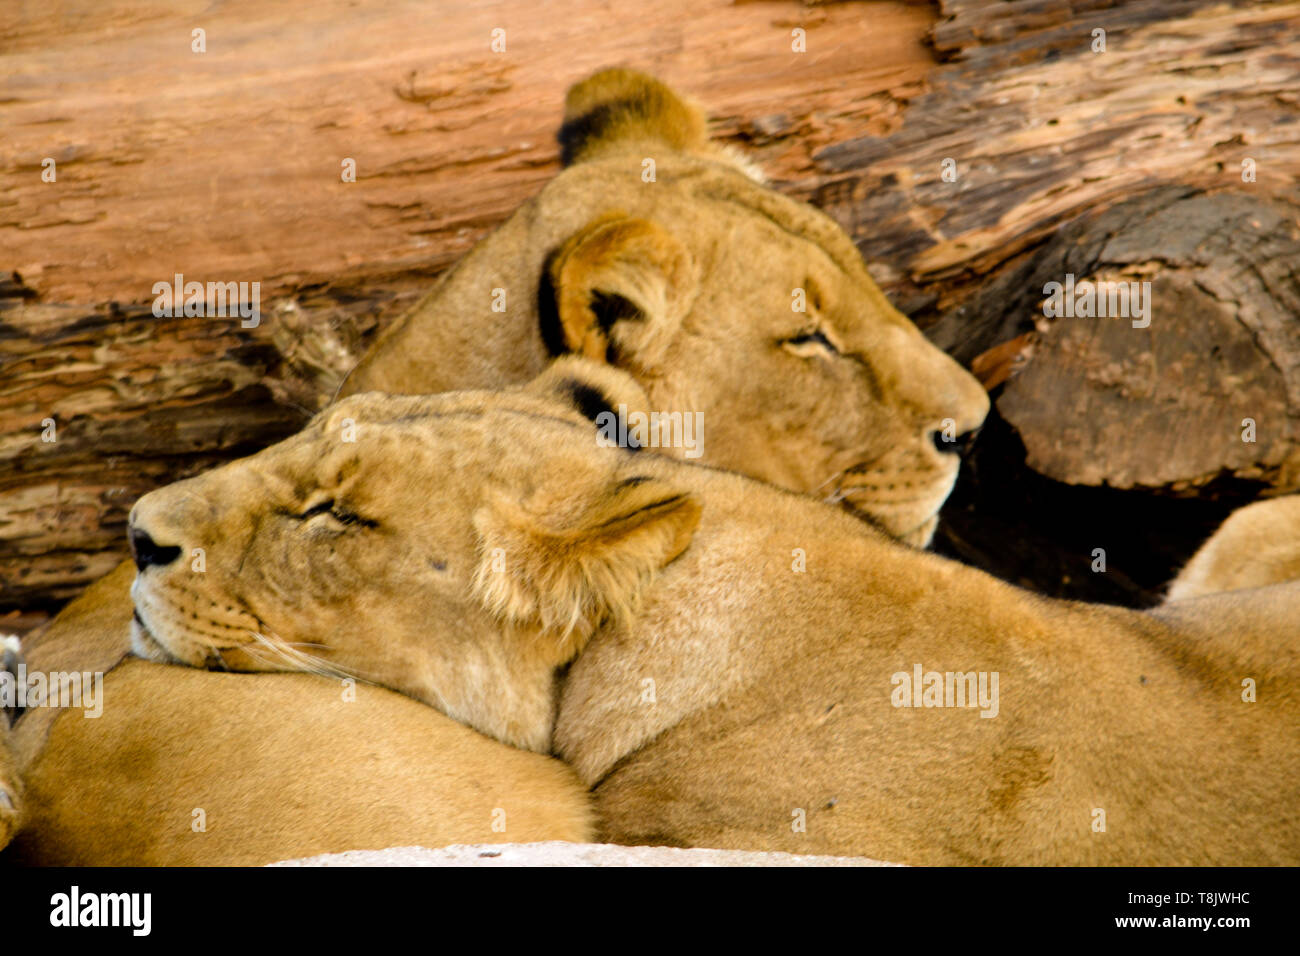 Sleeping lionesses Stock Photo